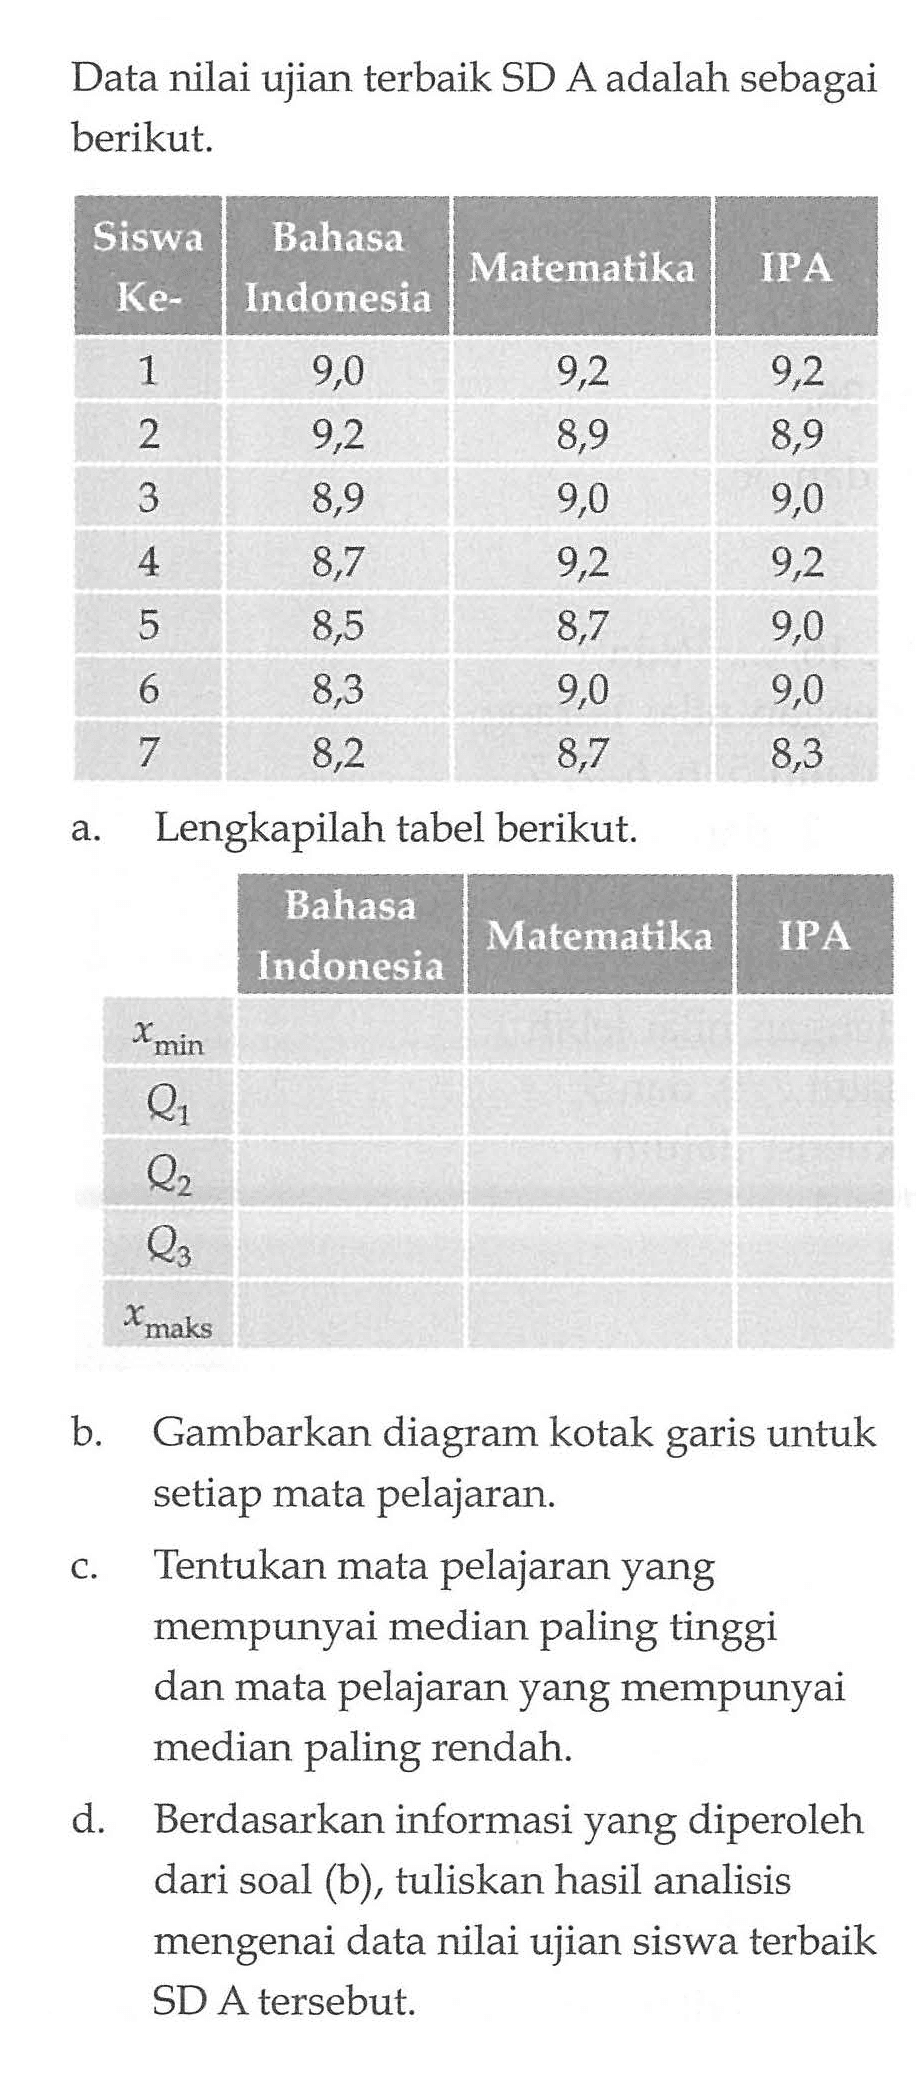 Data nilai ujian terbaik SD A adalah sebagai berikut.Siswa Ke- Bahasa Indonesia Matematika  IPA 1  9,0  9,2  9,2 2  9,2  8,9  8,9 3  8,9  9,0  9,0 4  8,7  9,2  9,2 5  8,5  8,7  9,0 6  8,3  9,0  9,0 7  8,2  8,7  8,3 Lengkapilah tabel berikut.Bahasa Indonesia  Matematika  IPA x min      Q1     Q2     Q3     x maksb. Gambarkan diagram kotak garis untuk setiap mata pelajaran.c. Tentukan mata pelajaran yang mempunyai median paling tinggi dan mata pelajaran yang mempunyai median paling rendah.d. Berdasarkan informasi yang diperoleh dari soal (b), tuliskan hasil analisis mengenai data nilai ujian siswa terbaik SD A tersebut.